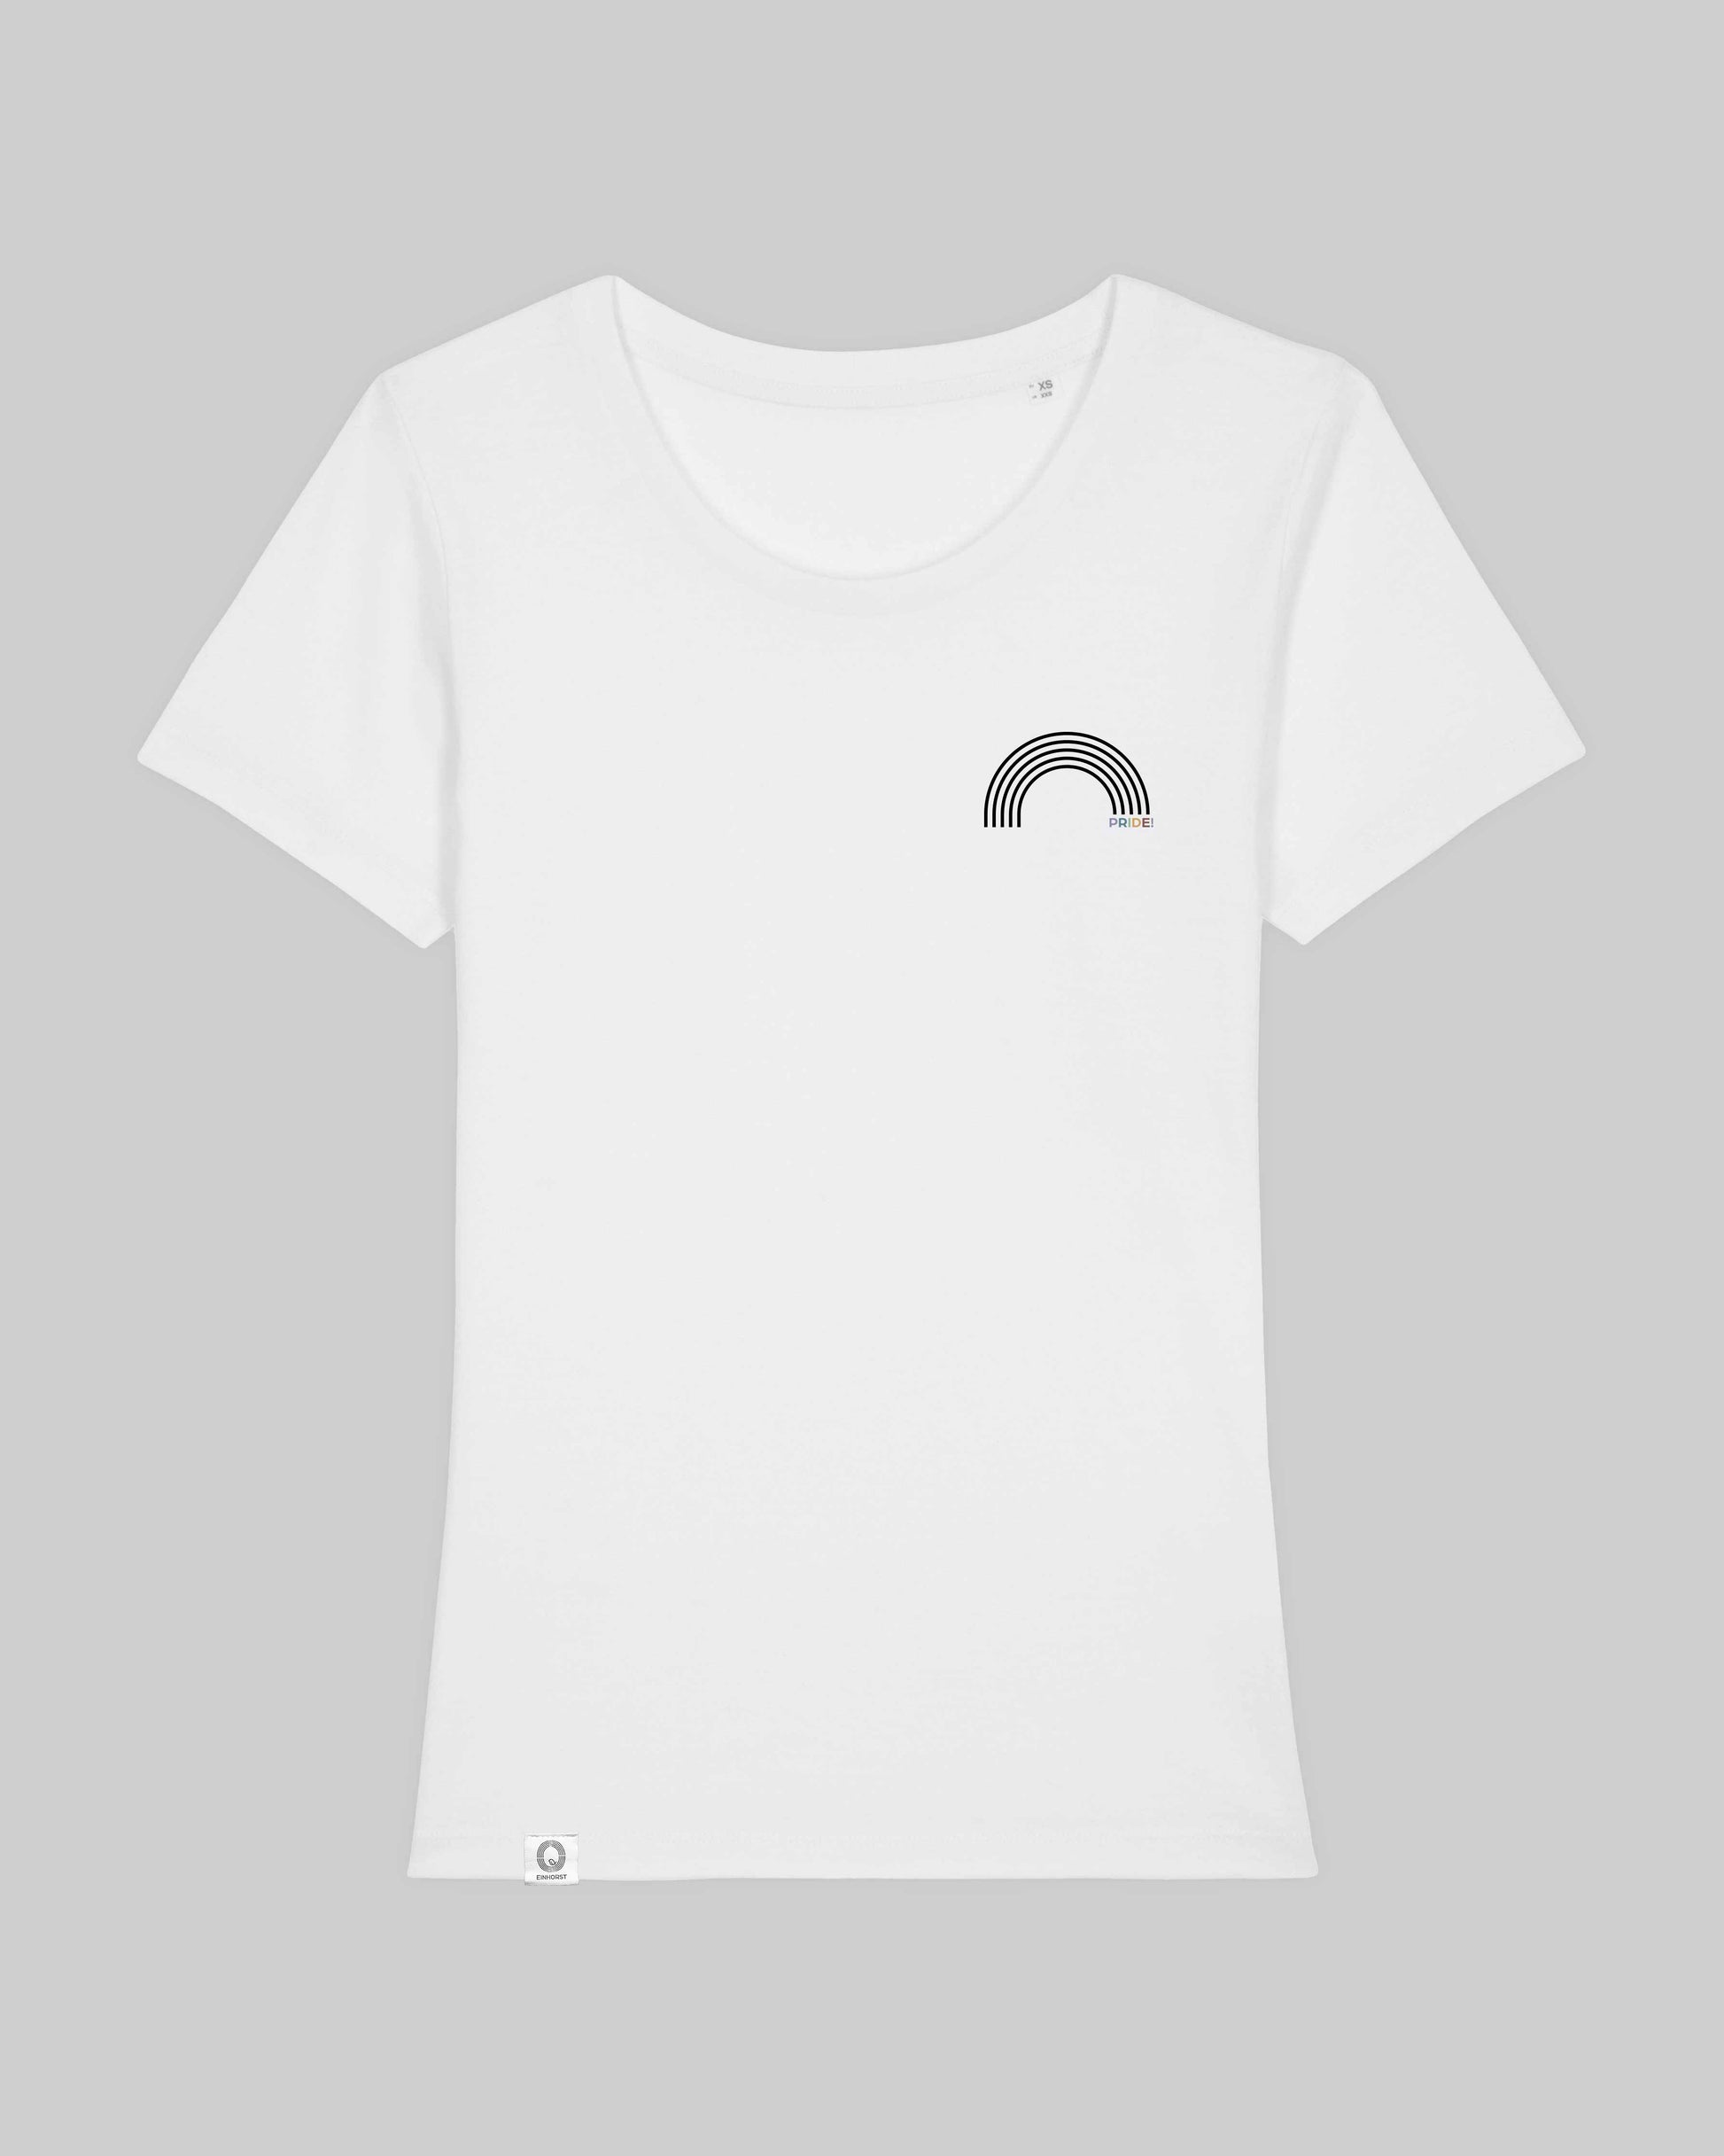 EINHORST® Organic Shirt tailliert in "Weiß" mit dem Motiv "pride Regenbogen" in der Kombination schwarzer Regenbogen mit bunter Schrift, Bild von Shirt von vorne